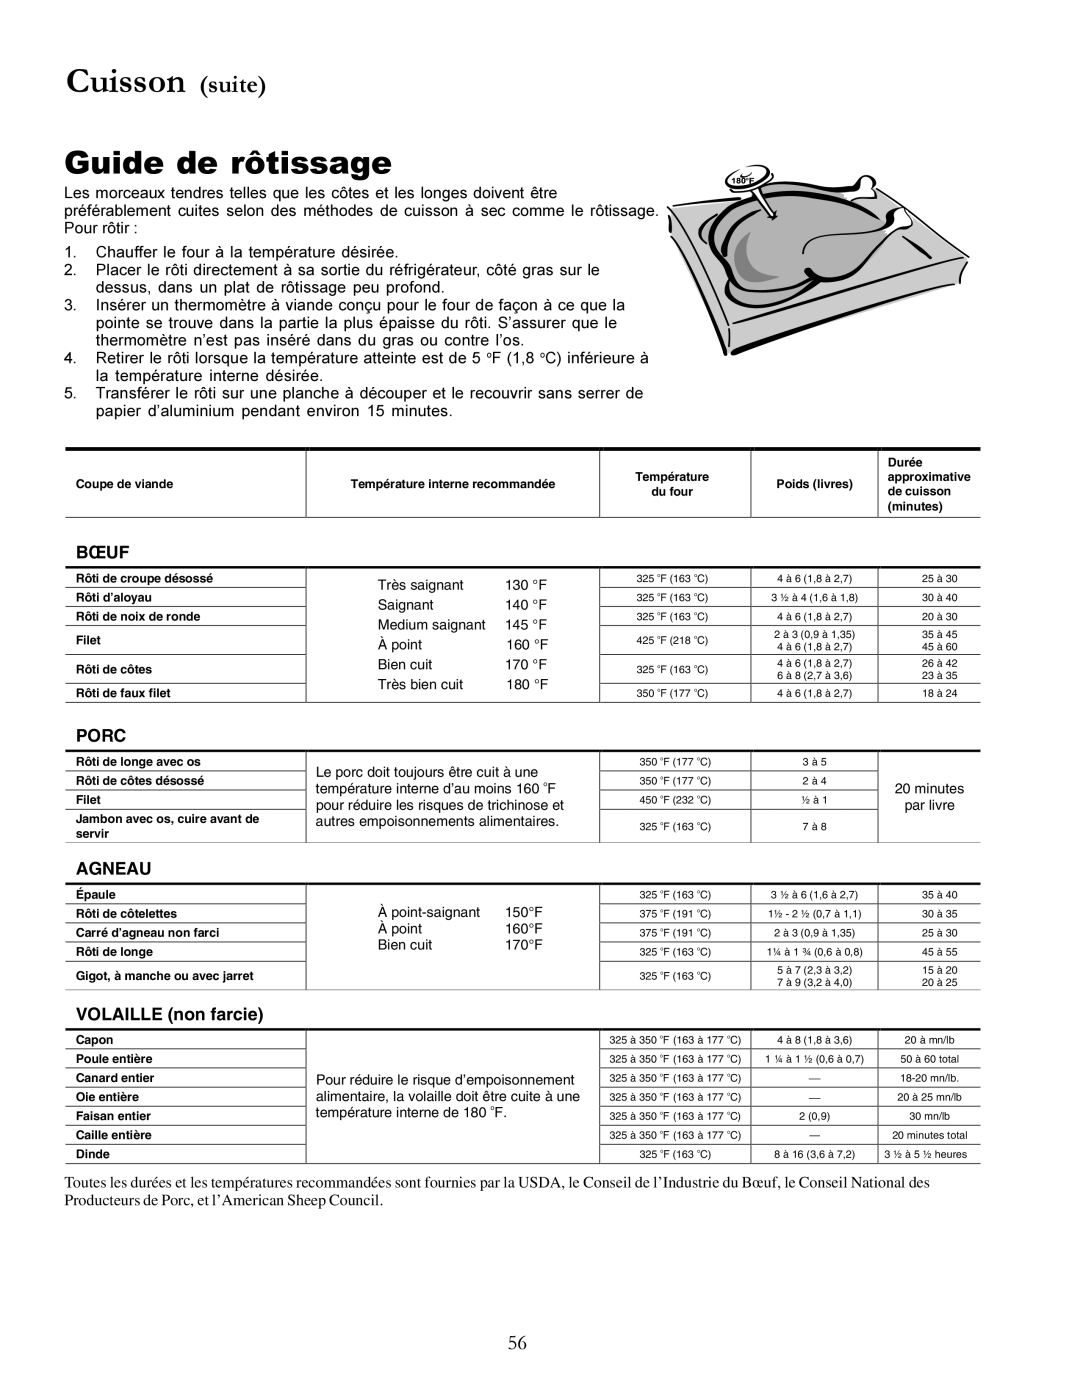 Amana The Big Oven Gas Range, ACF3355A Guide de rôtissage, Cuisson suite, Bœuf, Porc, Agneau, VOLAILLE non farcie 